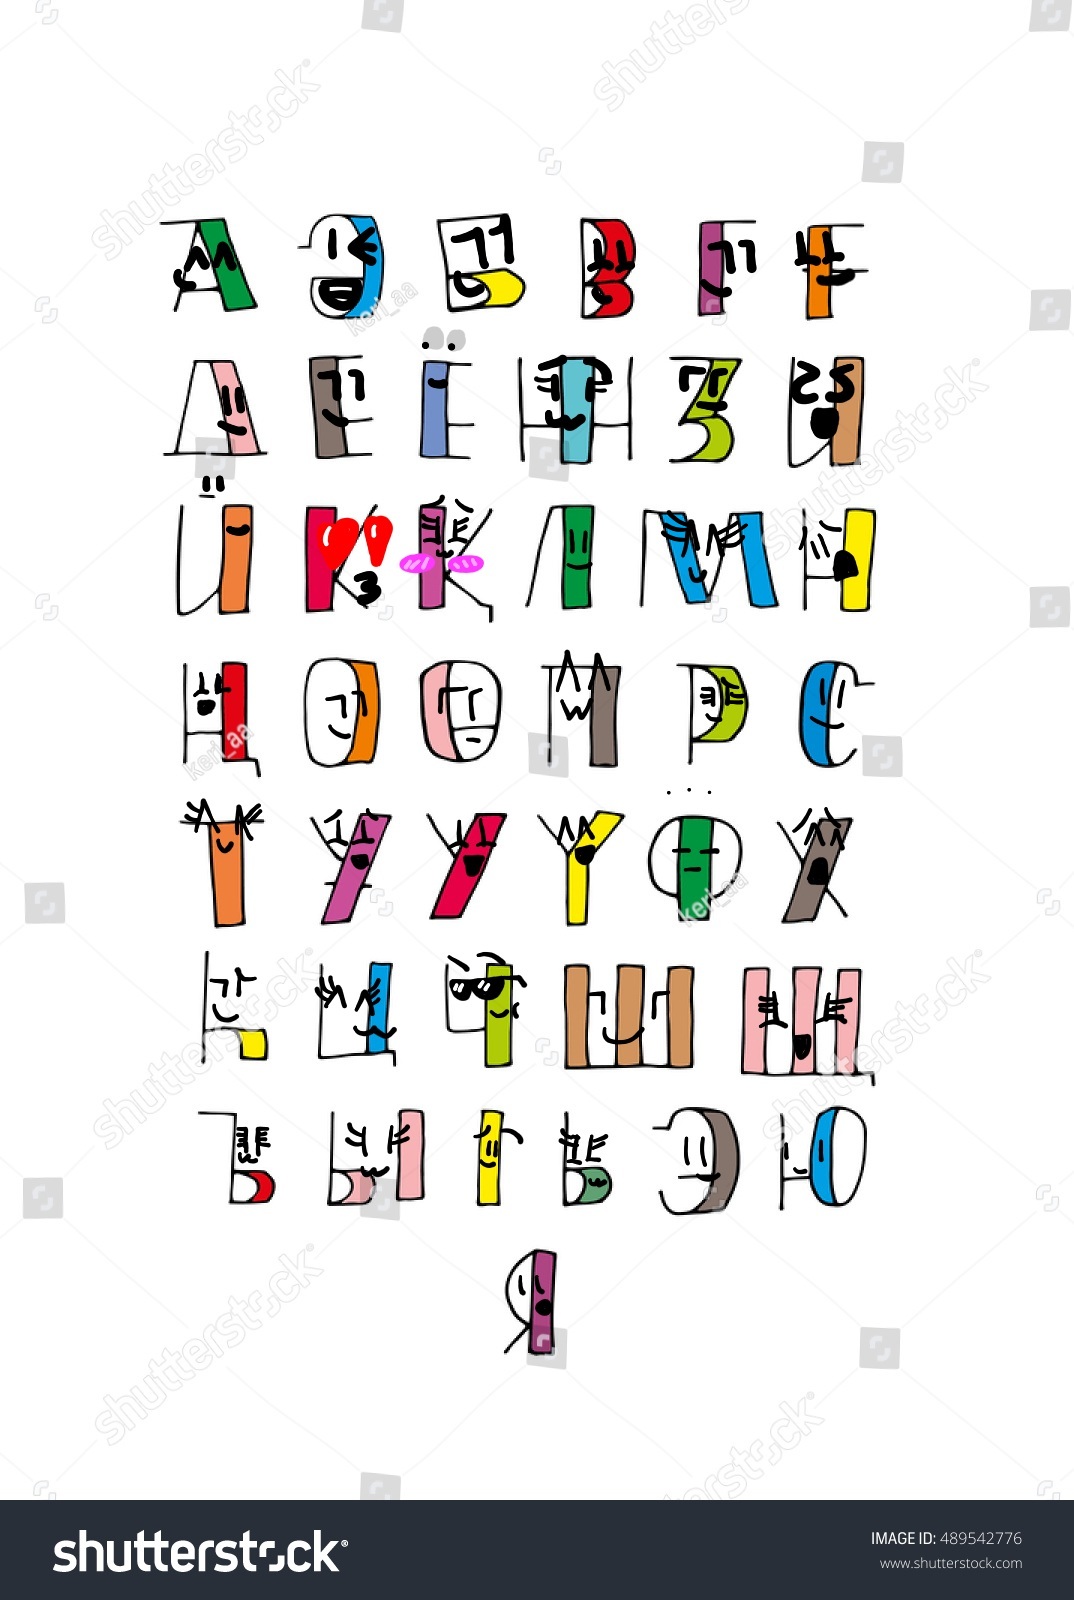 Қ  Tajik Alphabet Lore 